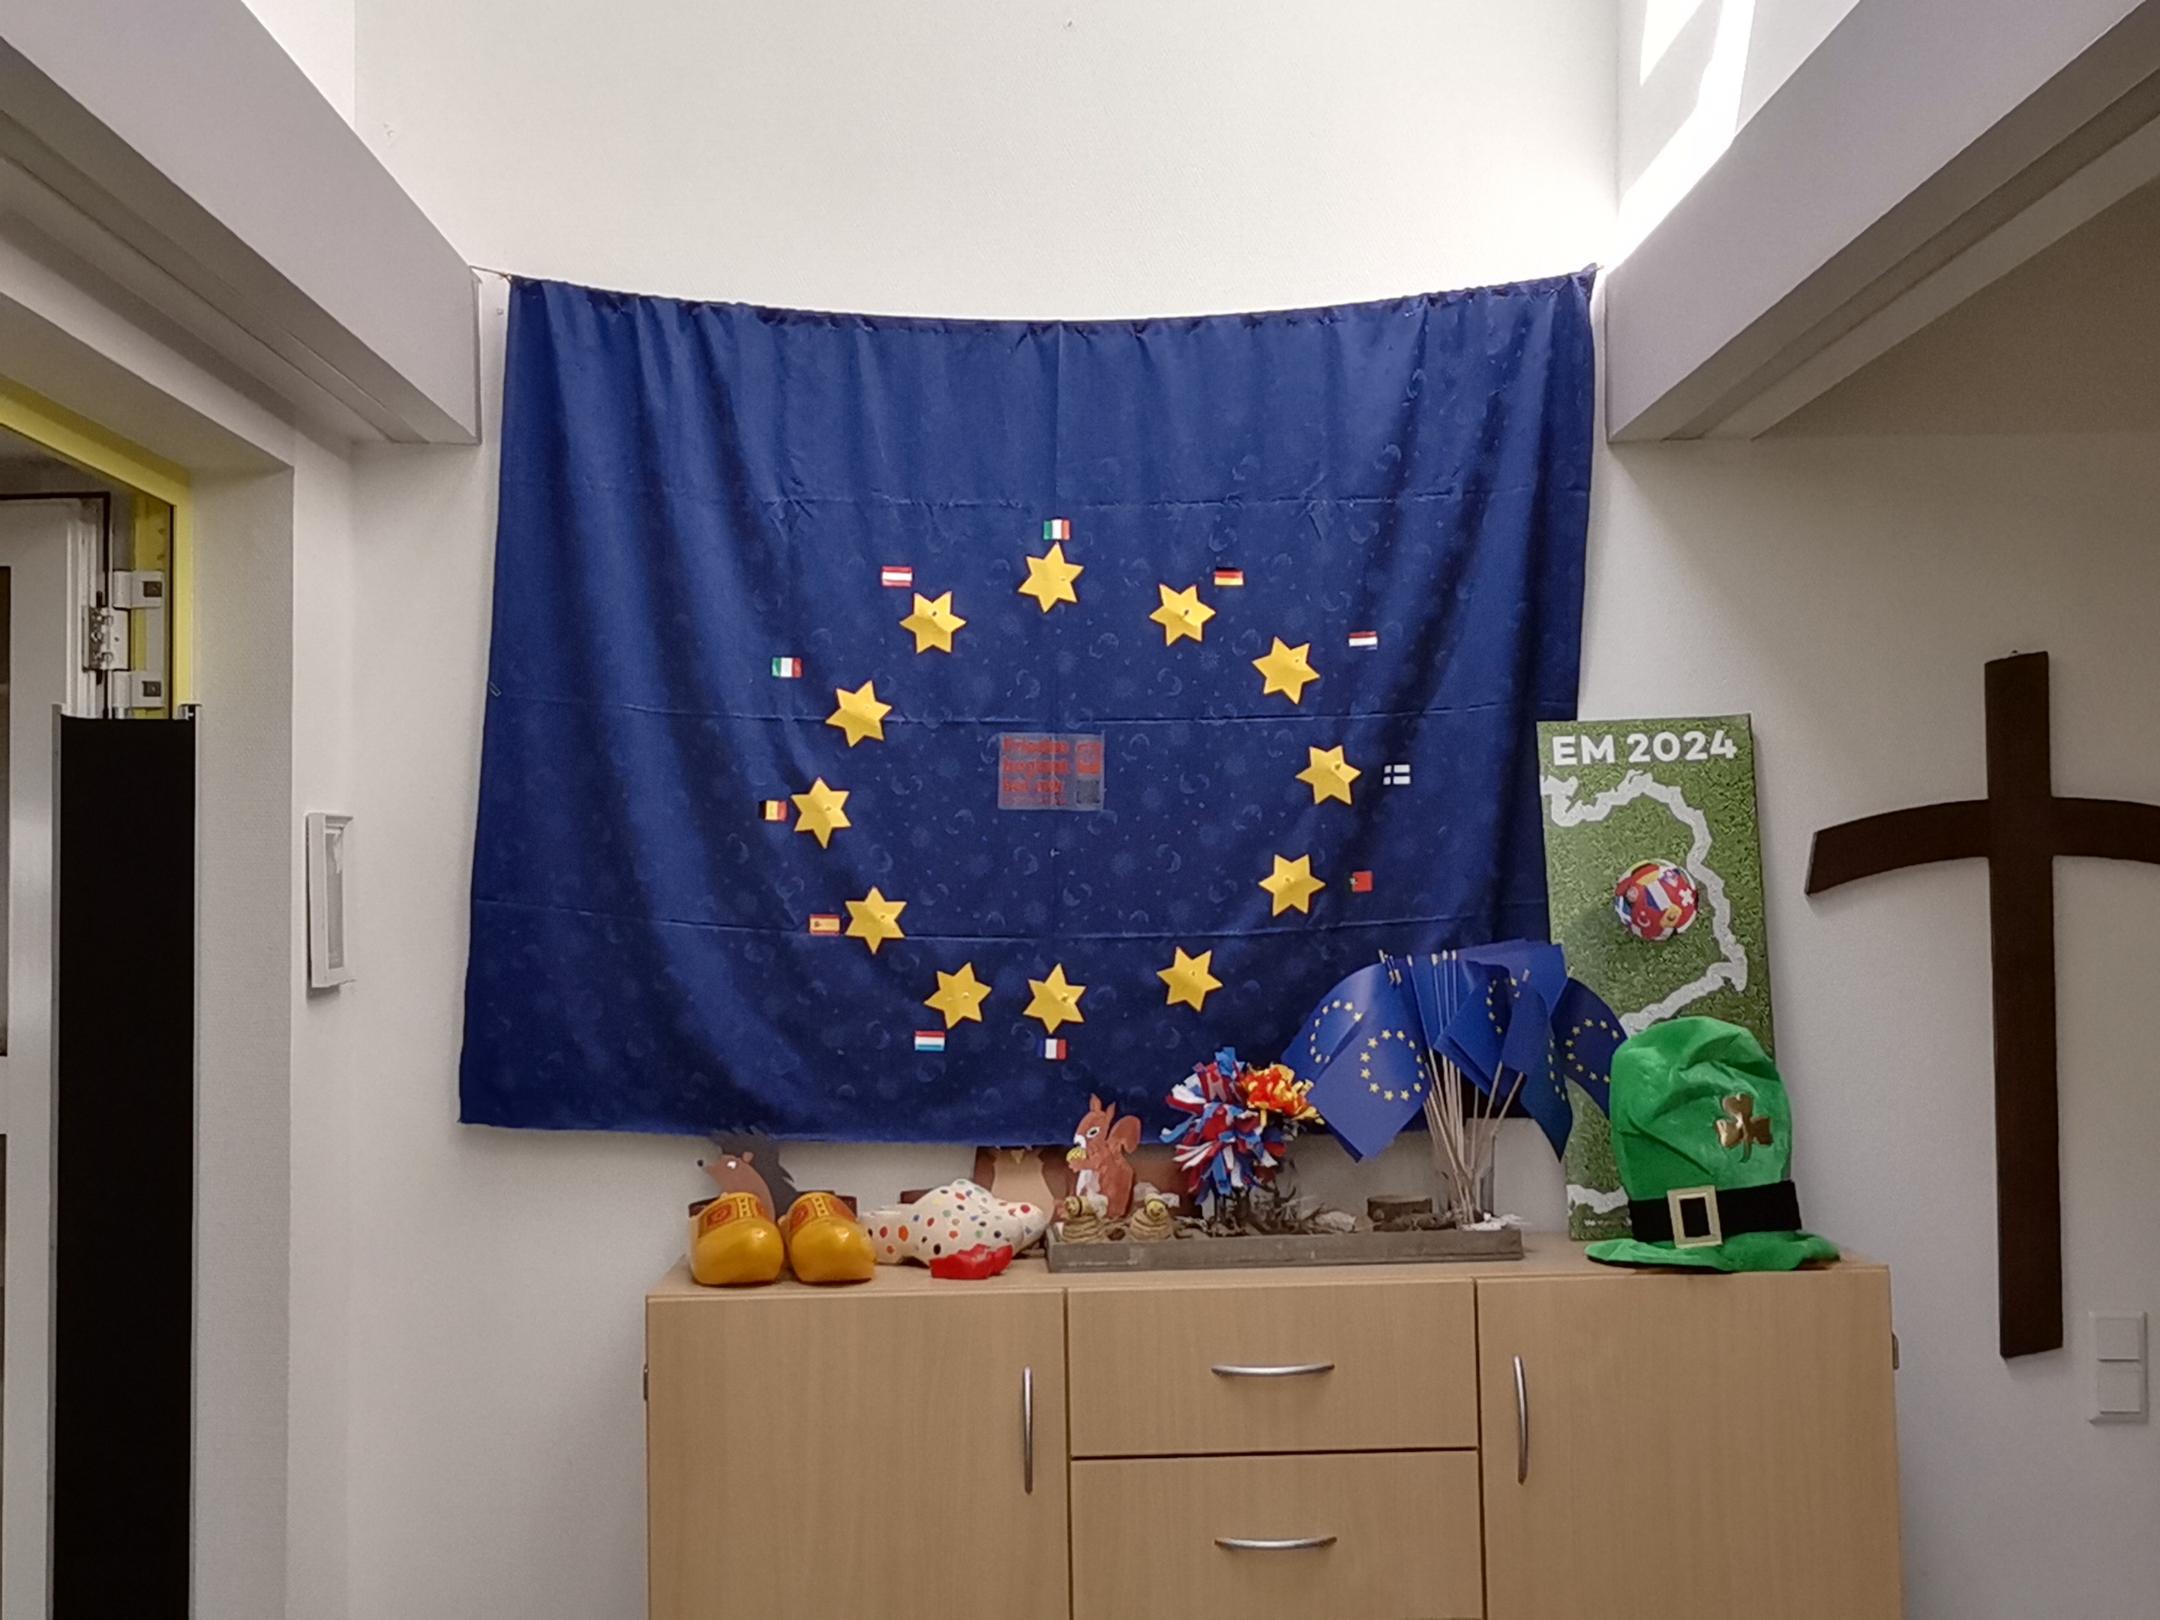 Nun ist die Europa-Flagge vollständig. Mit jedem neuen Land kam ein Stern dazu.